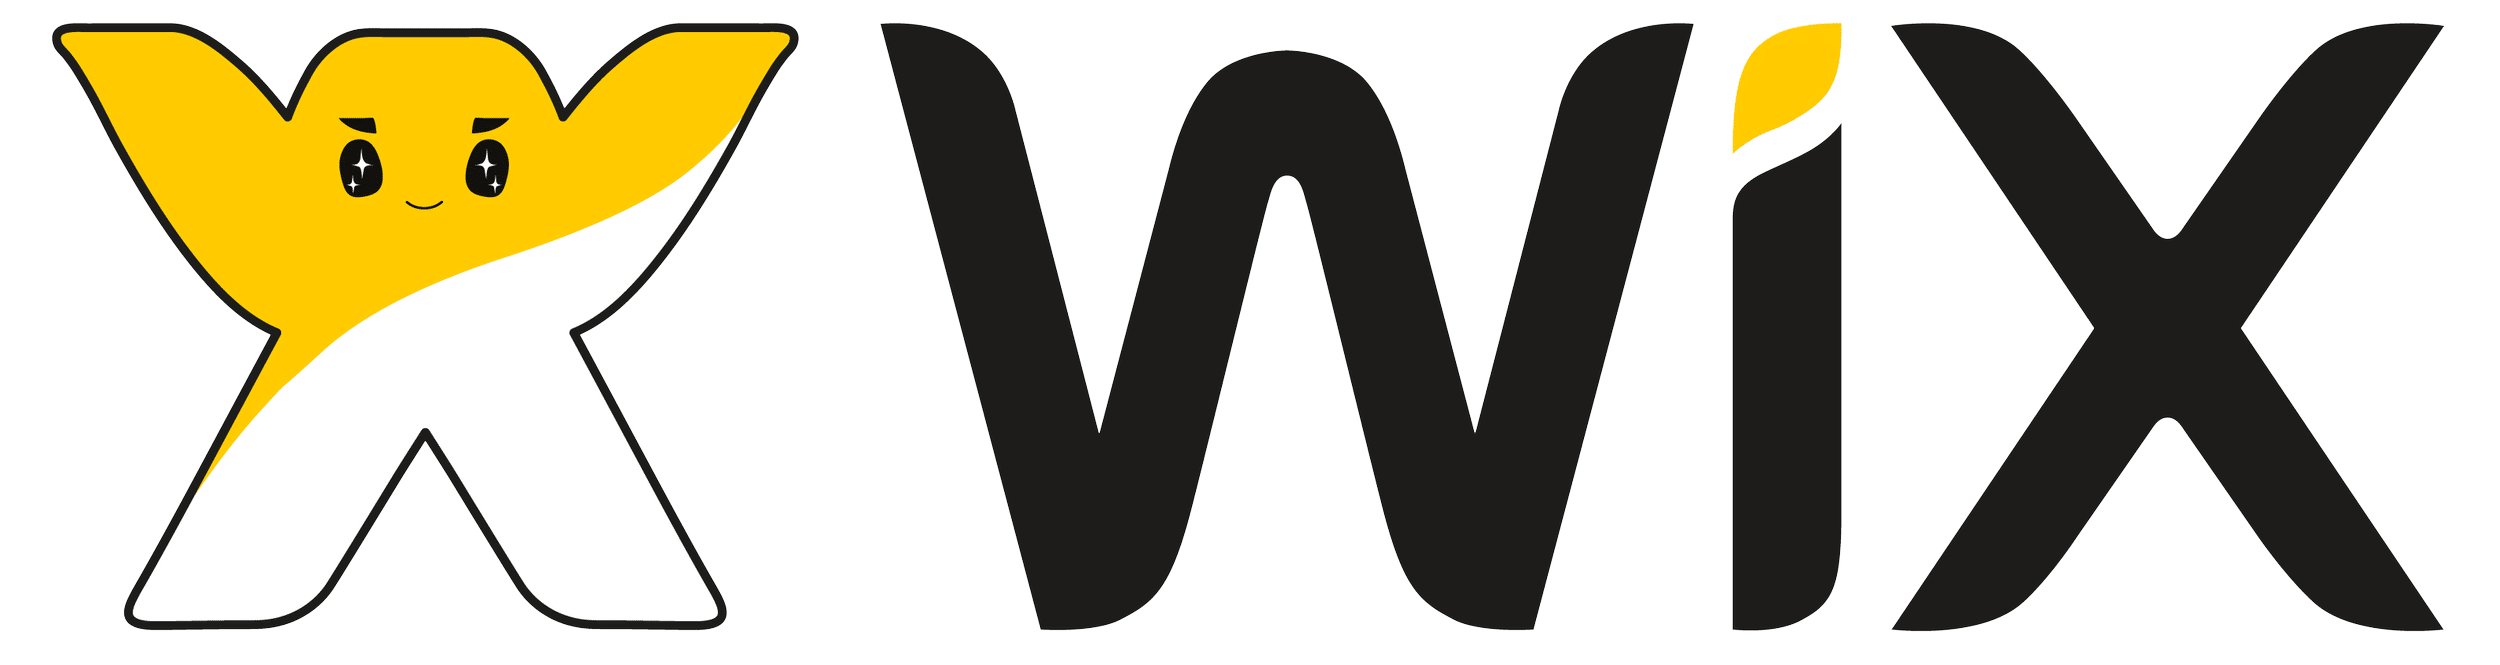 Wix No code development platform logo